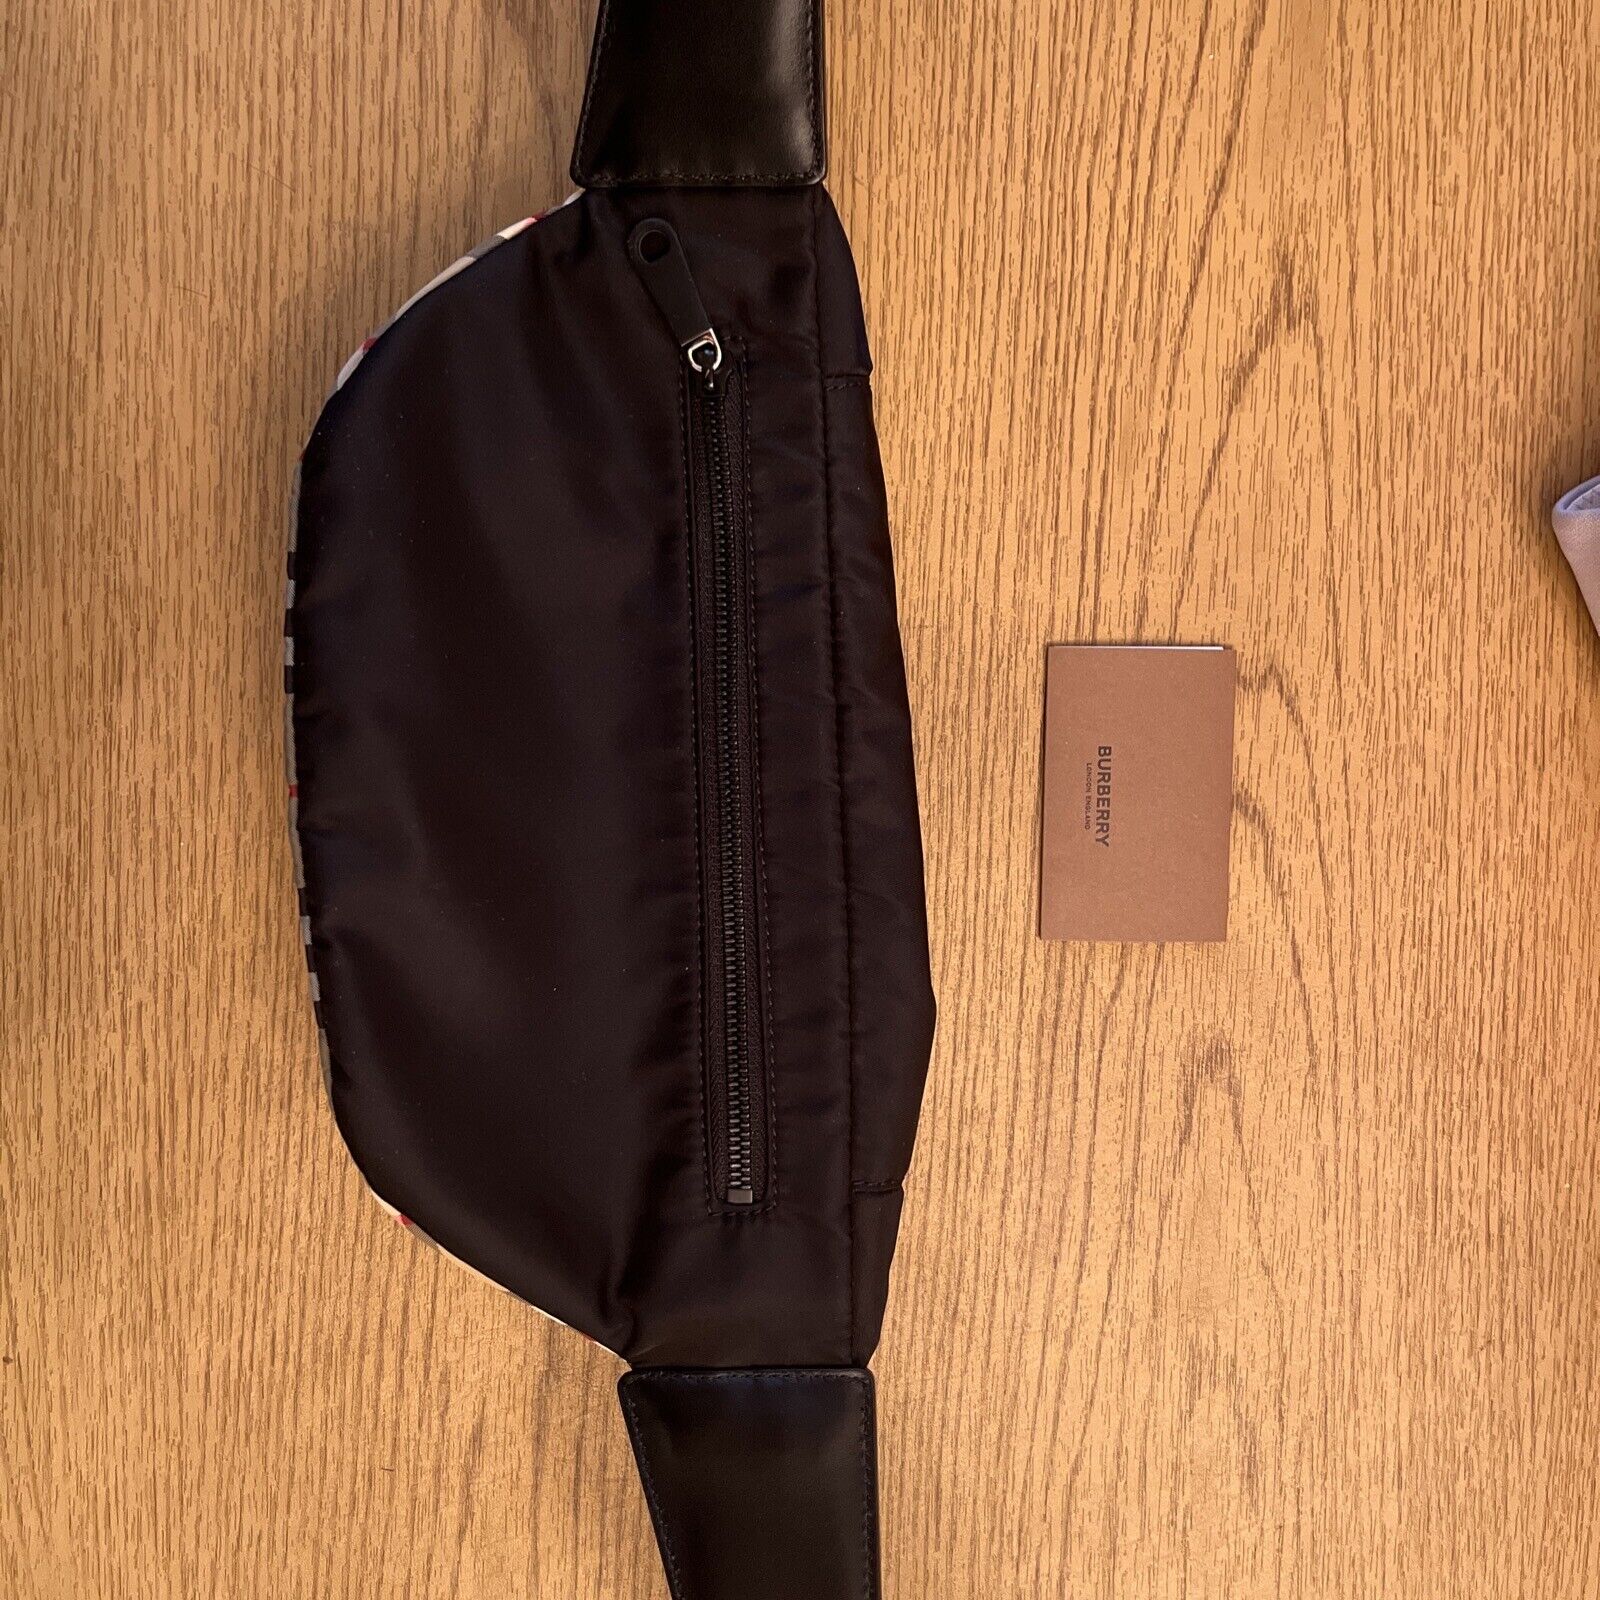 burberry belt bag - image 11